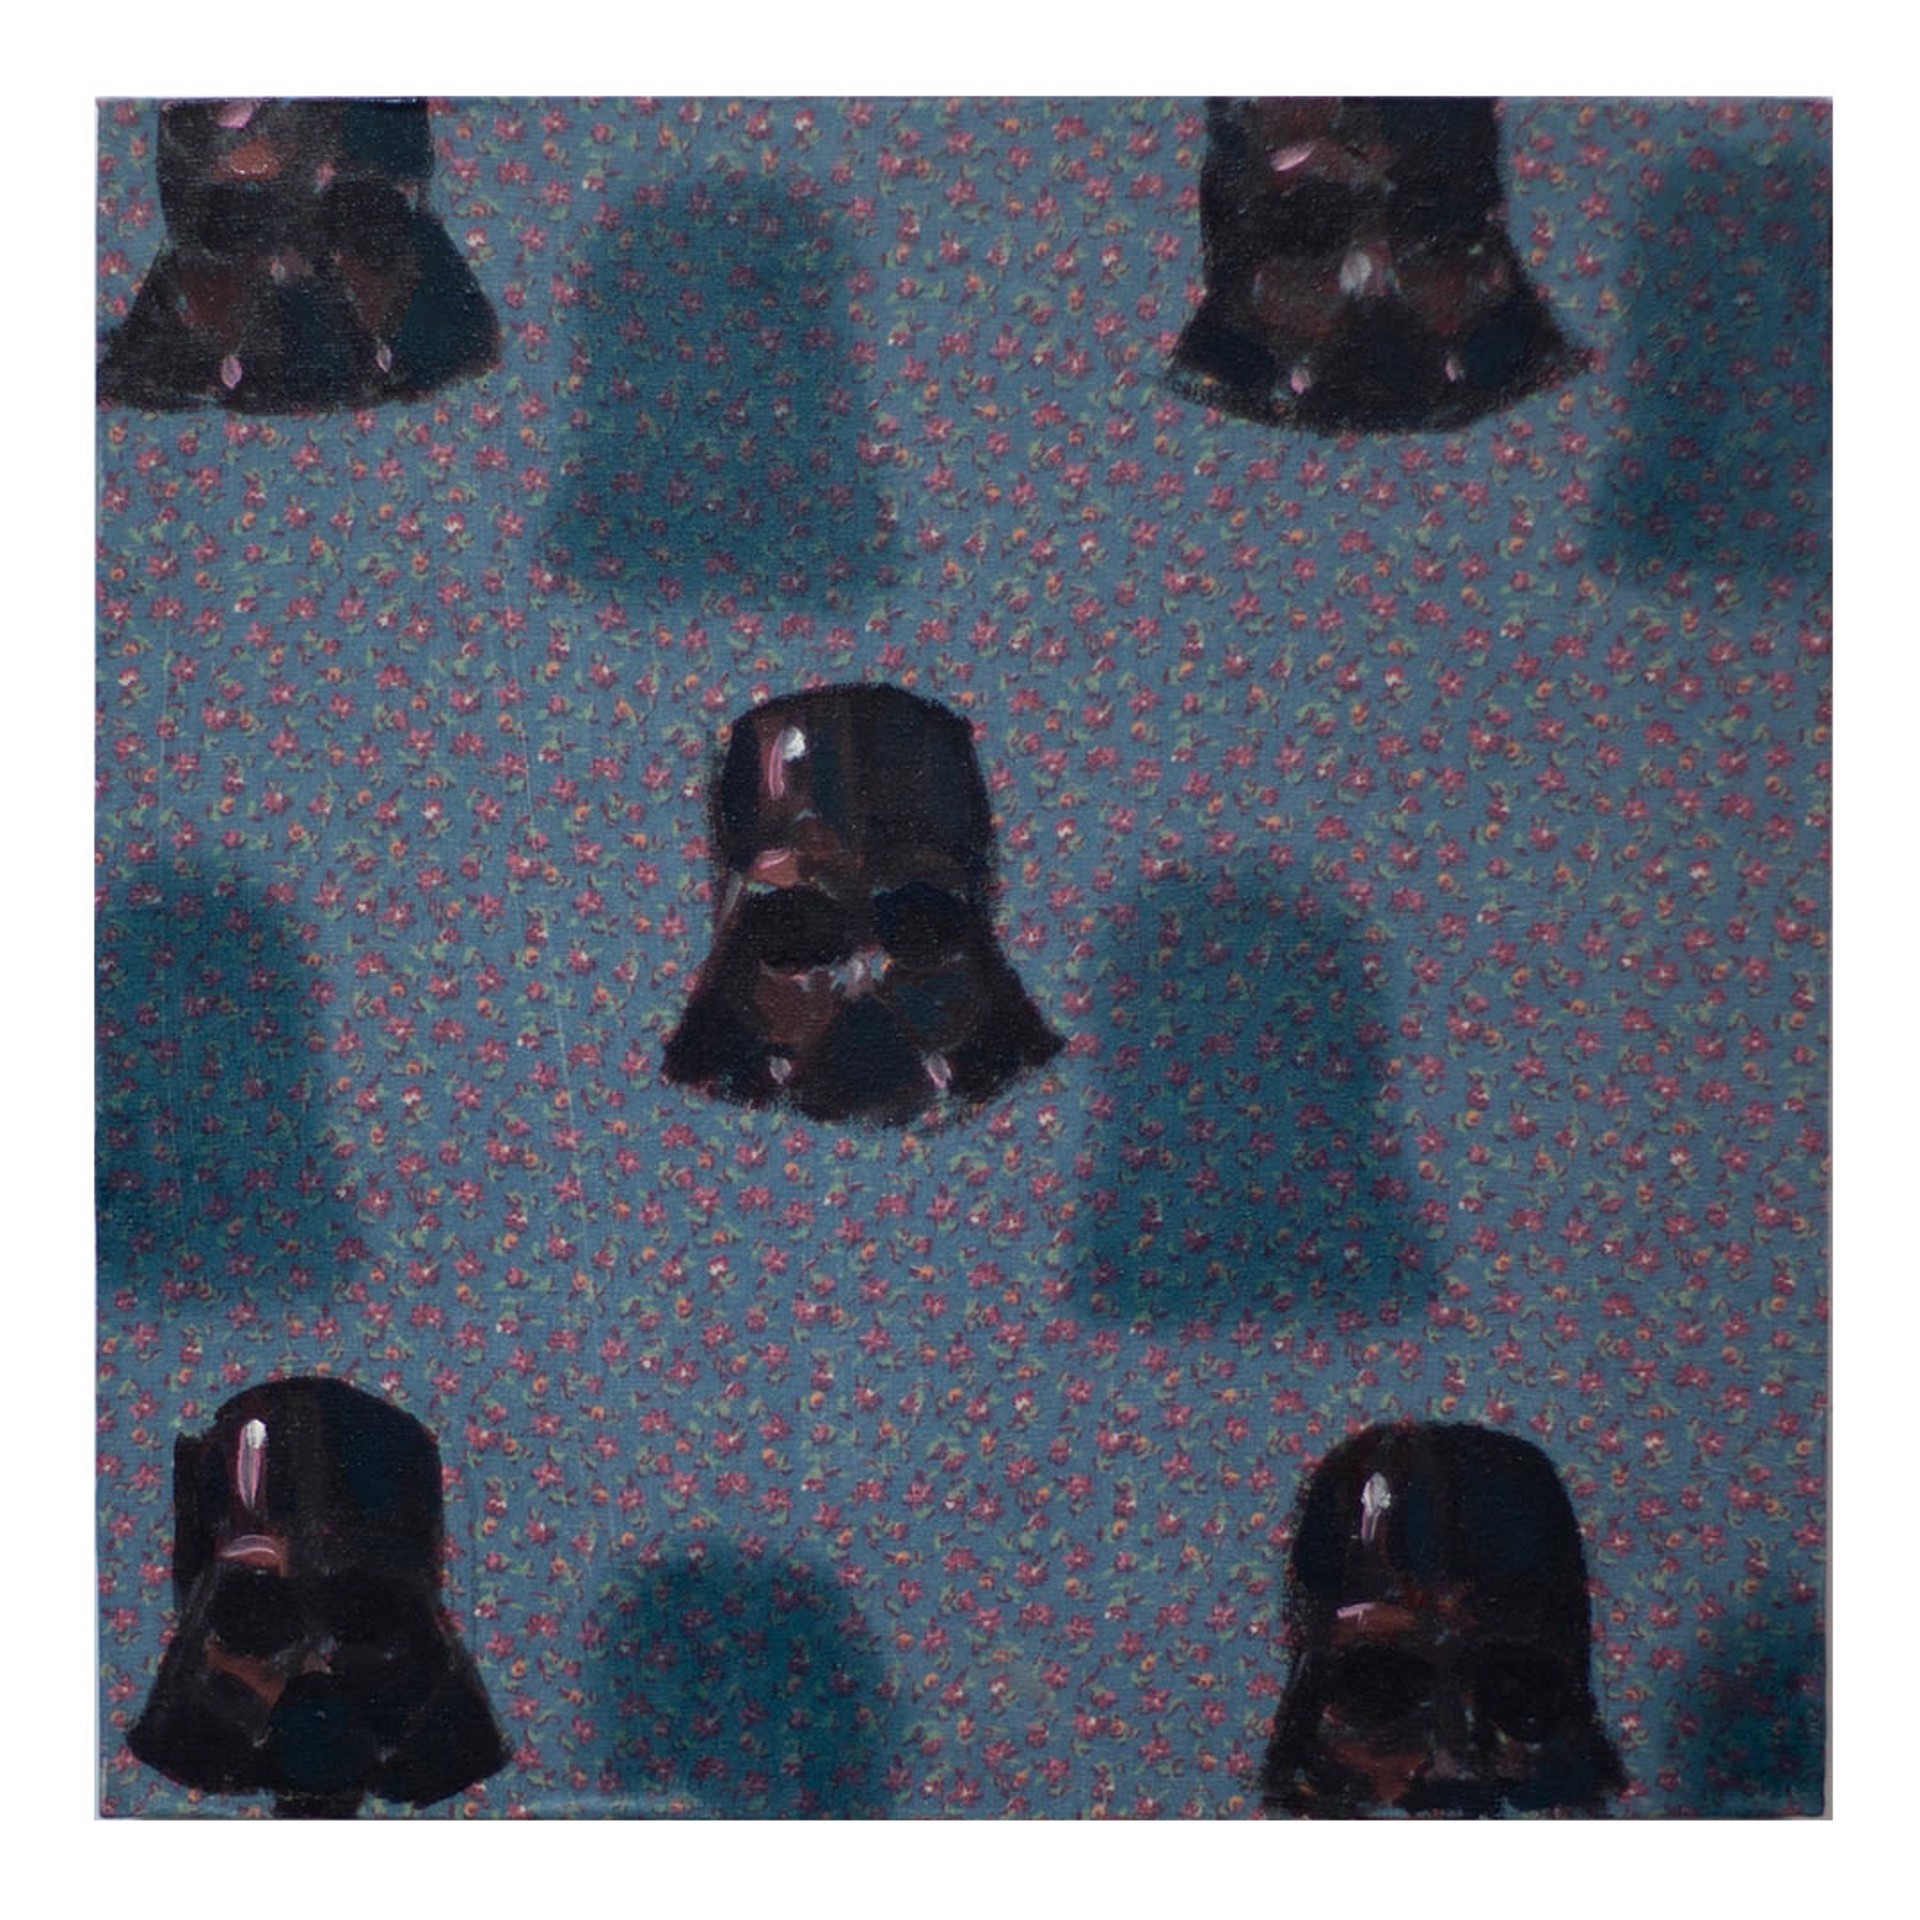 Vaders on pattern by Dan Pelonis